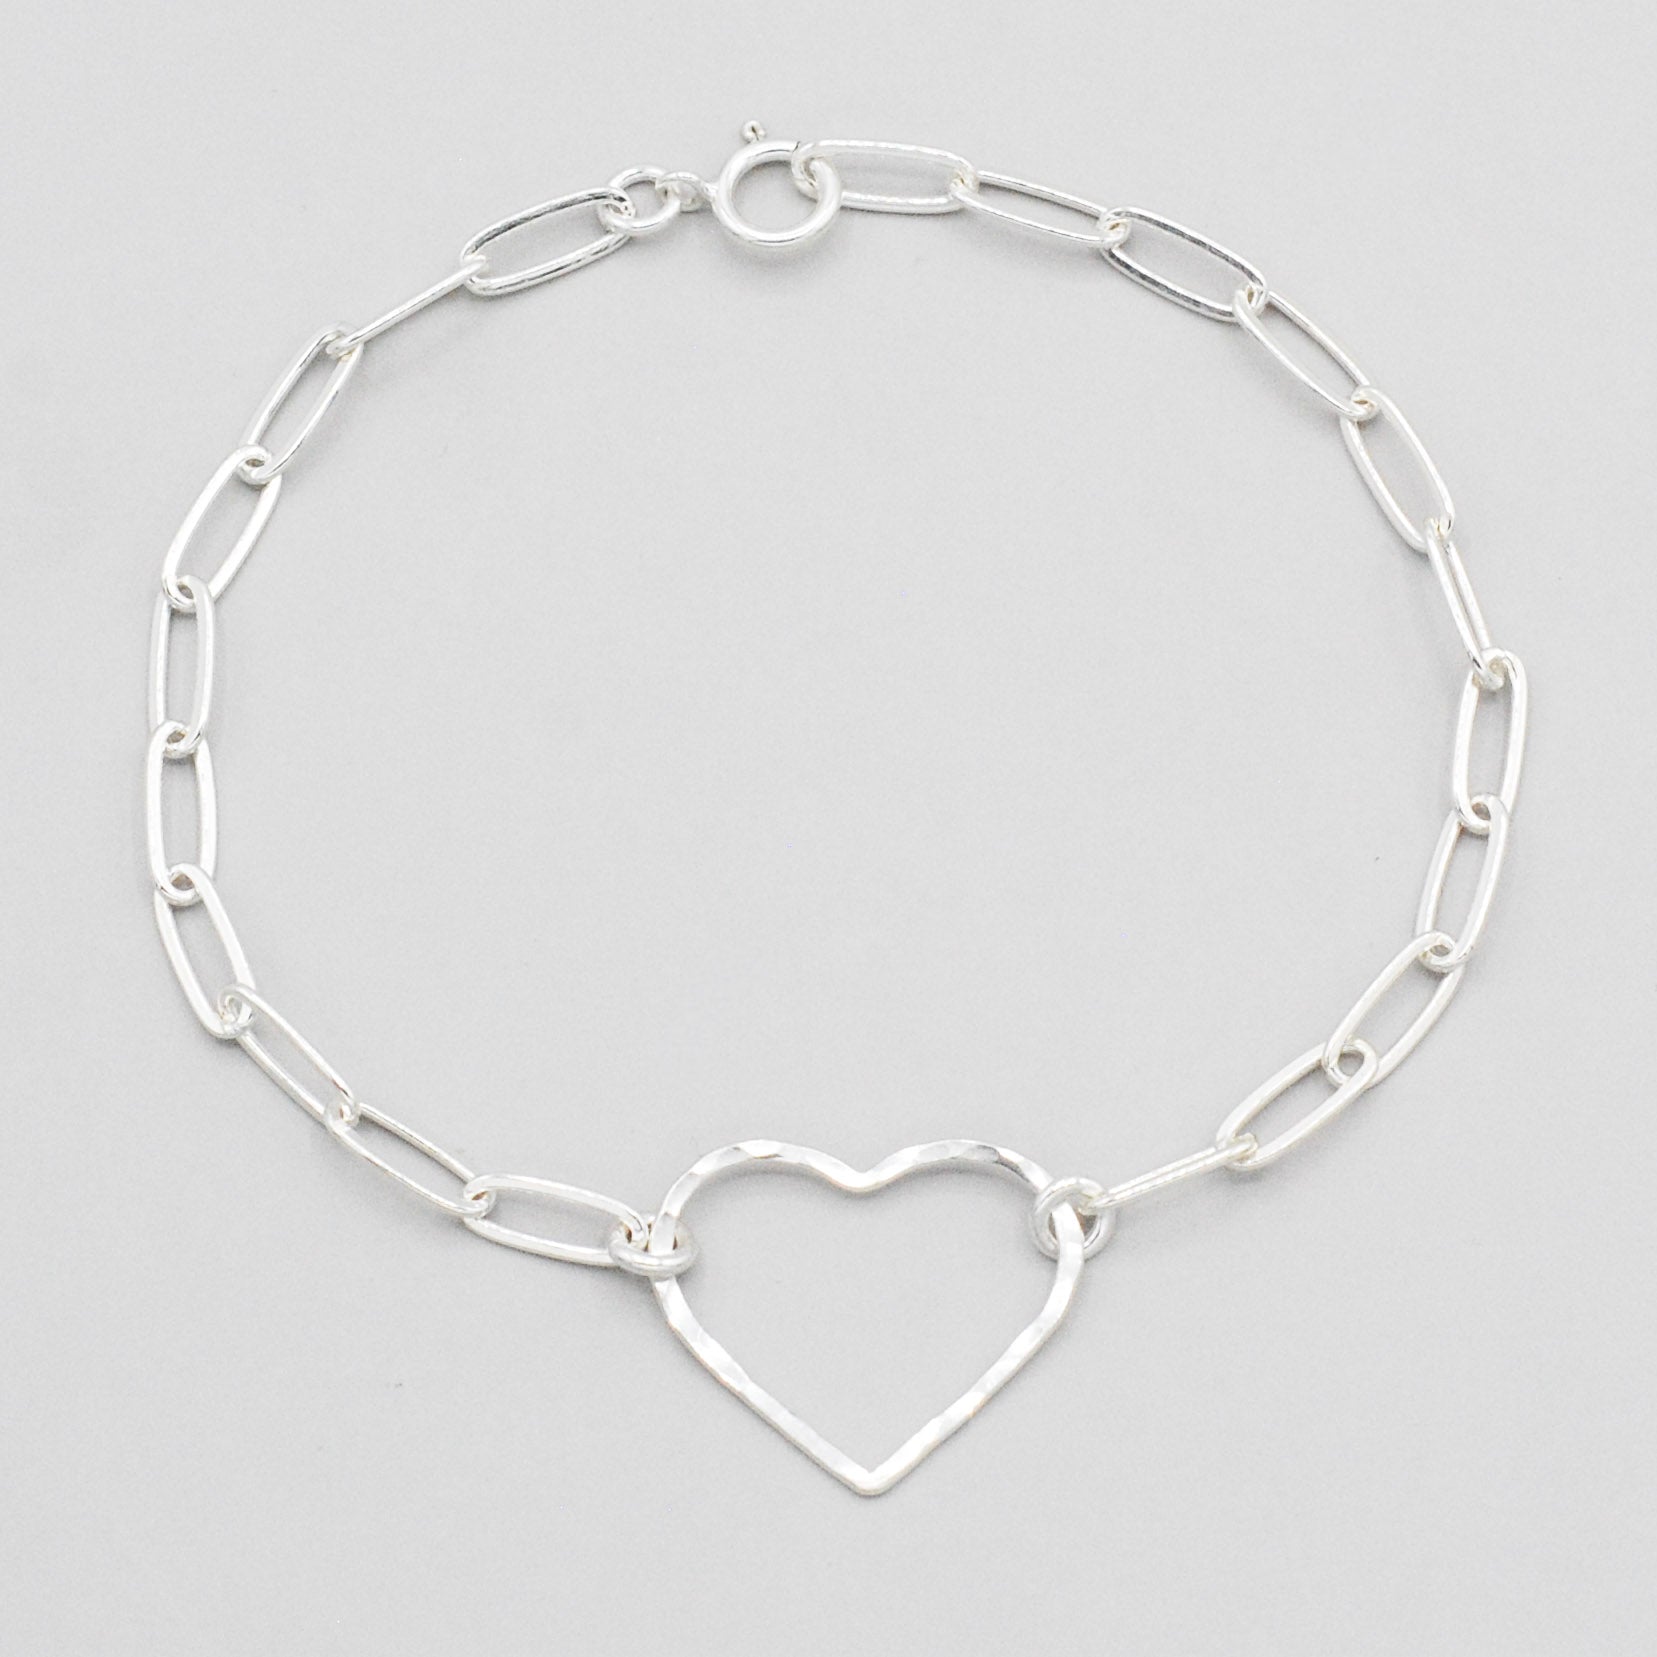 Sterling Silver Paper Clip Heart Bracelet - Jewel Ya